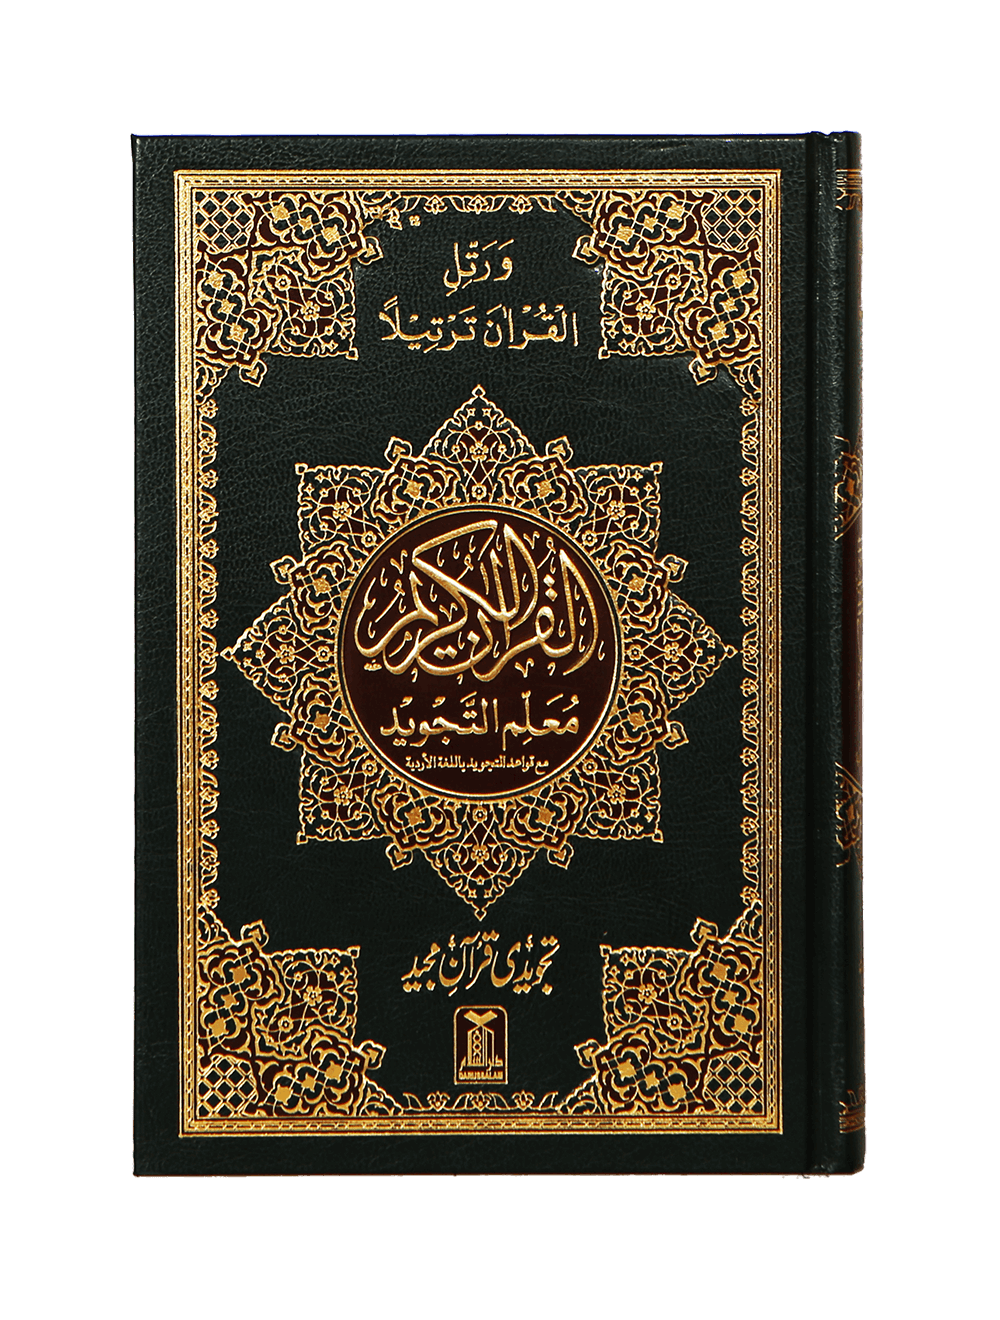 Книга бывшего мусульманина. Мусульманские книги. Коран обложка. Обложка для книги Коран. Обложка мусульманской книги.